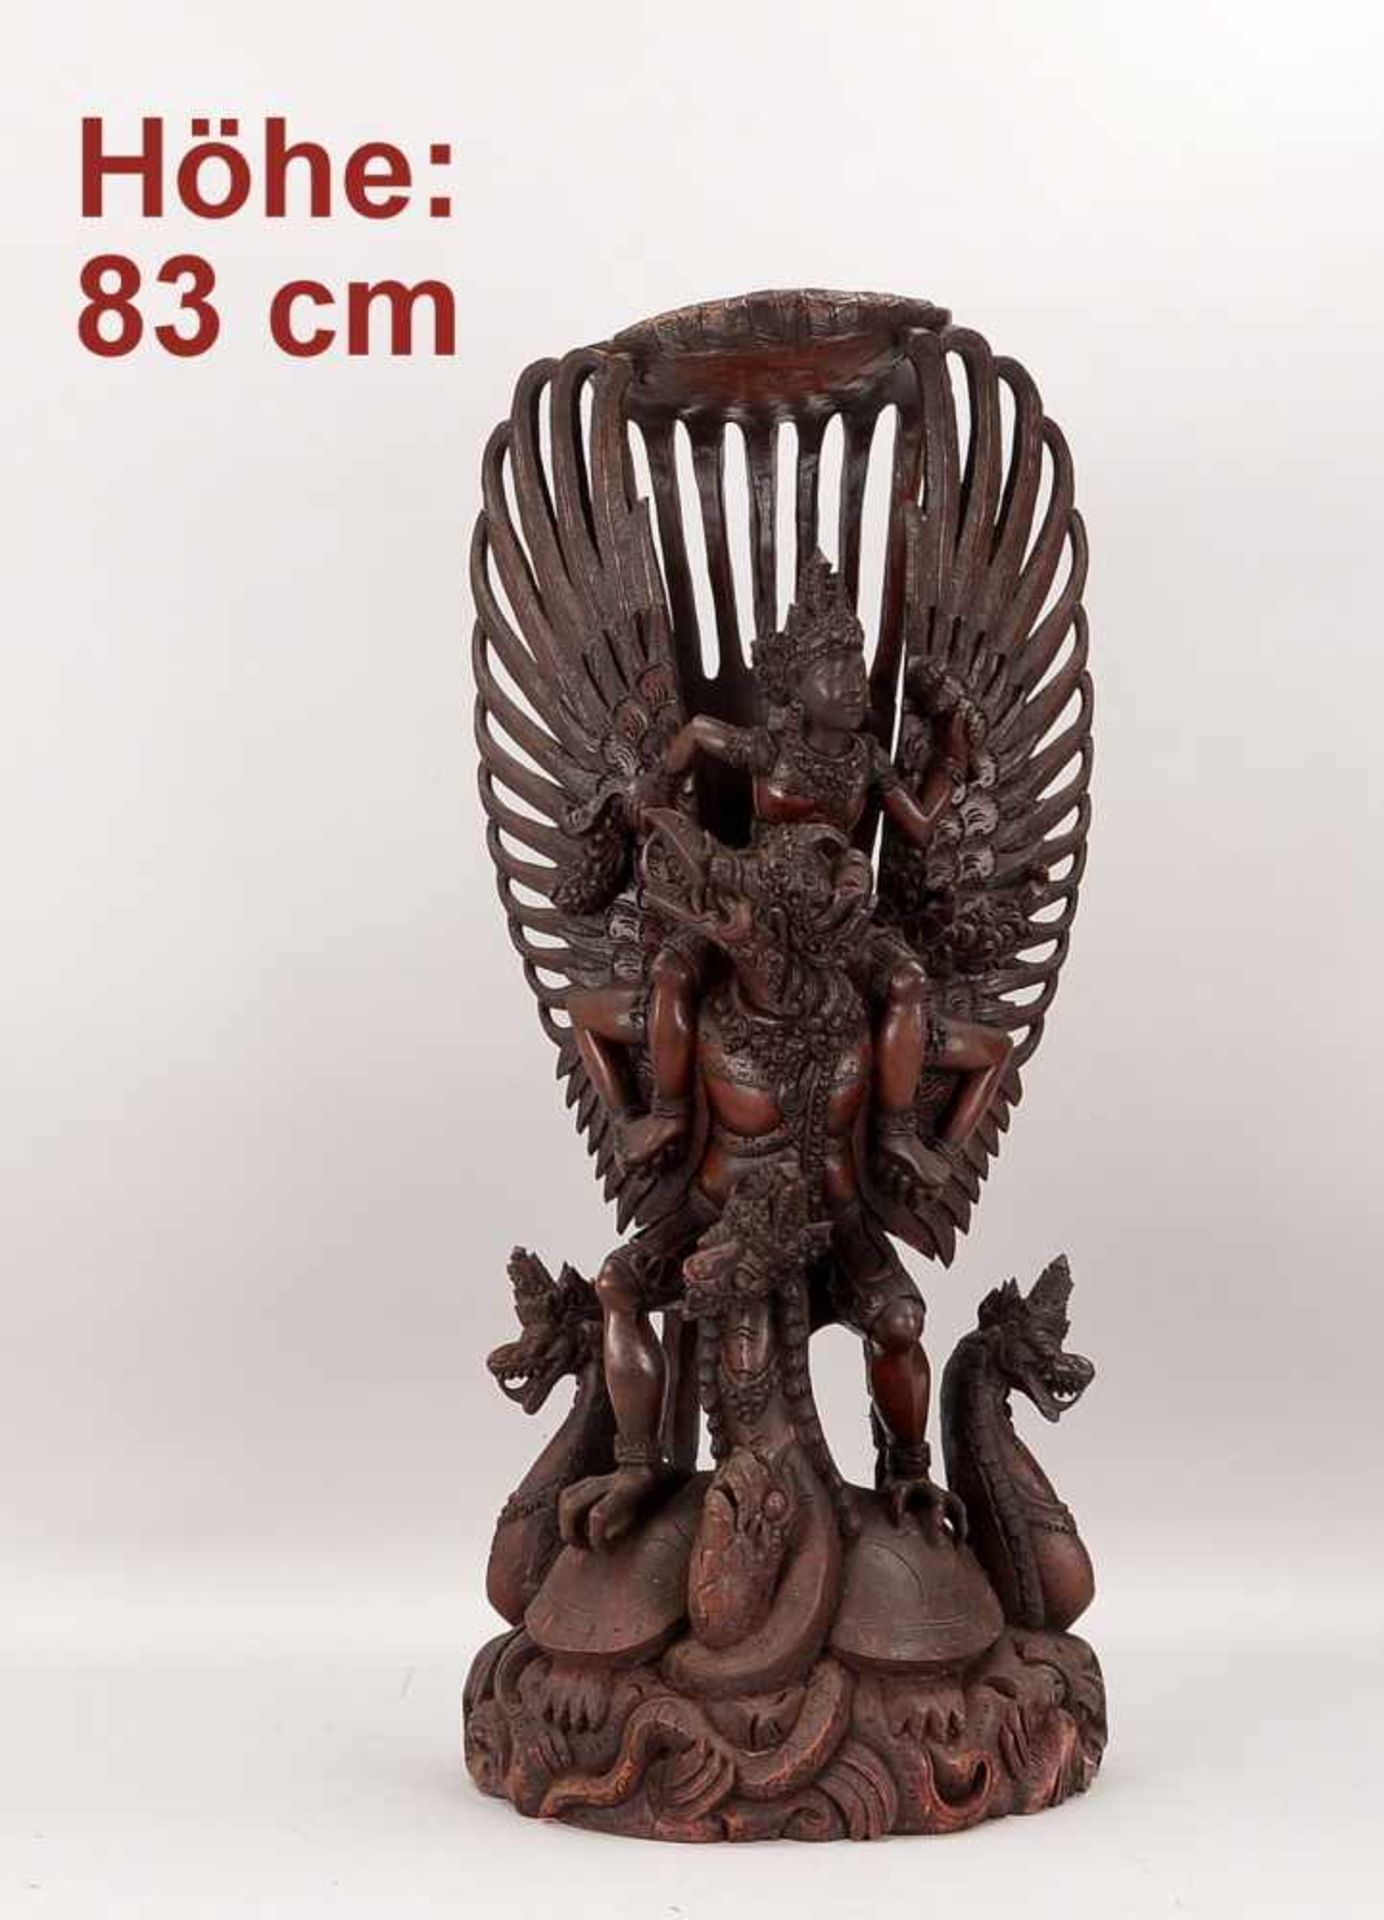 Holzskulptur, Asien, feine Schnitzarbeit, 'Garuda' ('Götterbote' - dargestellt auf Schildkröte und